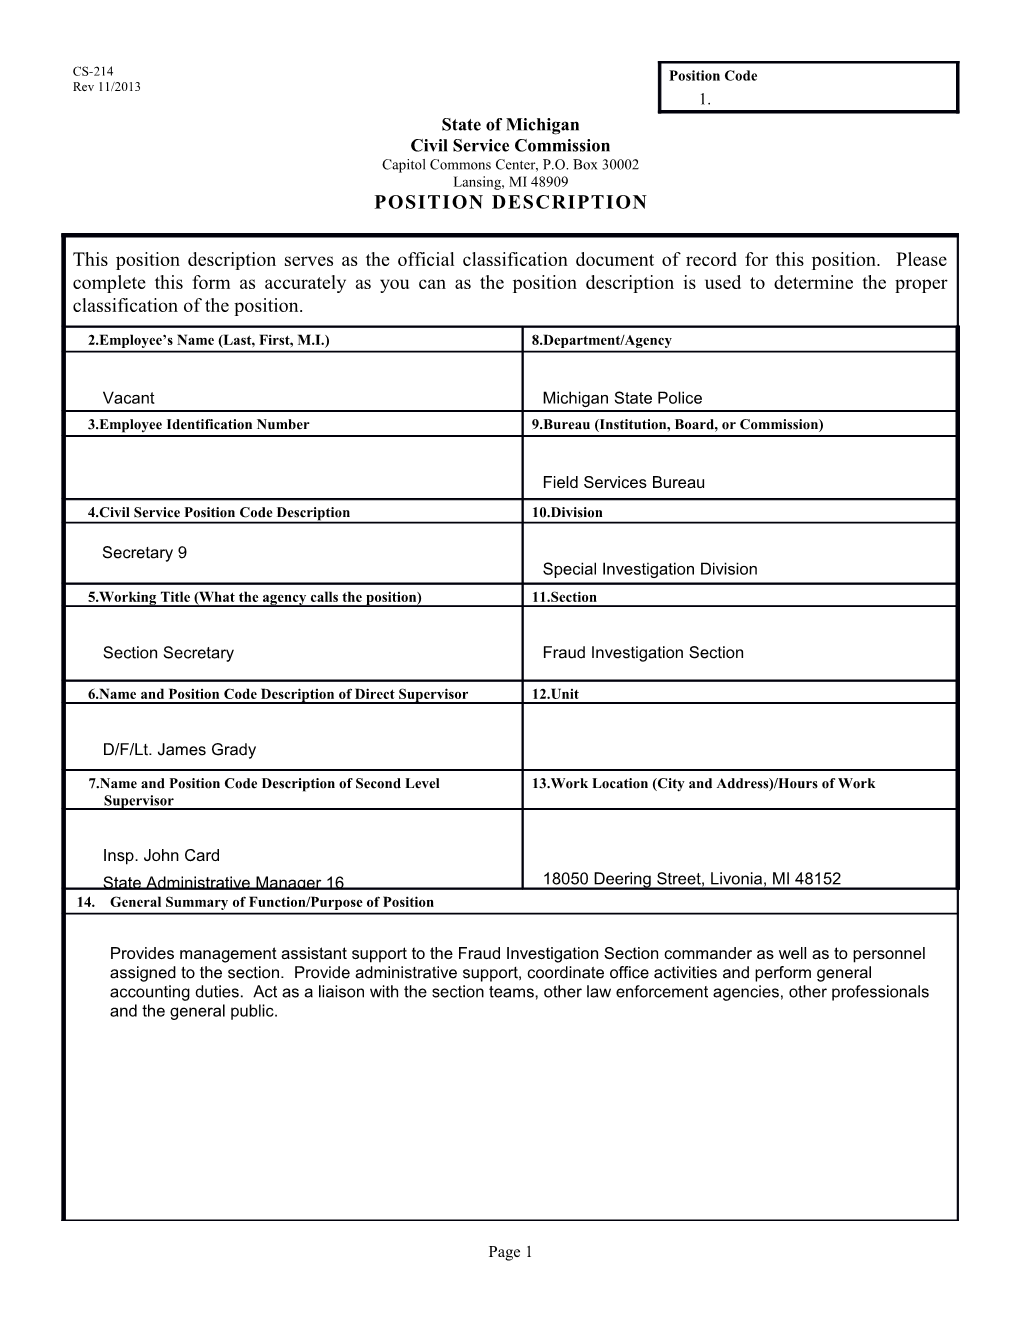 CS-214 Position Description Form s20